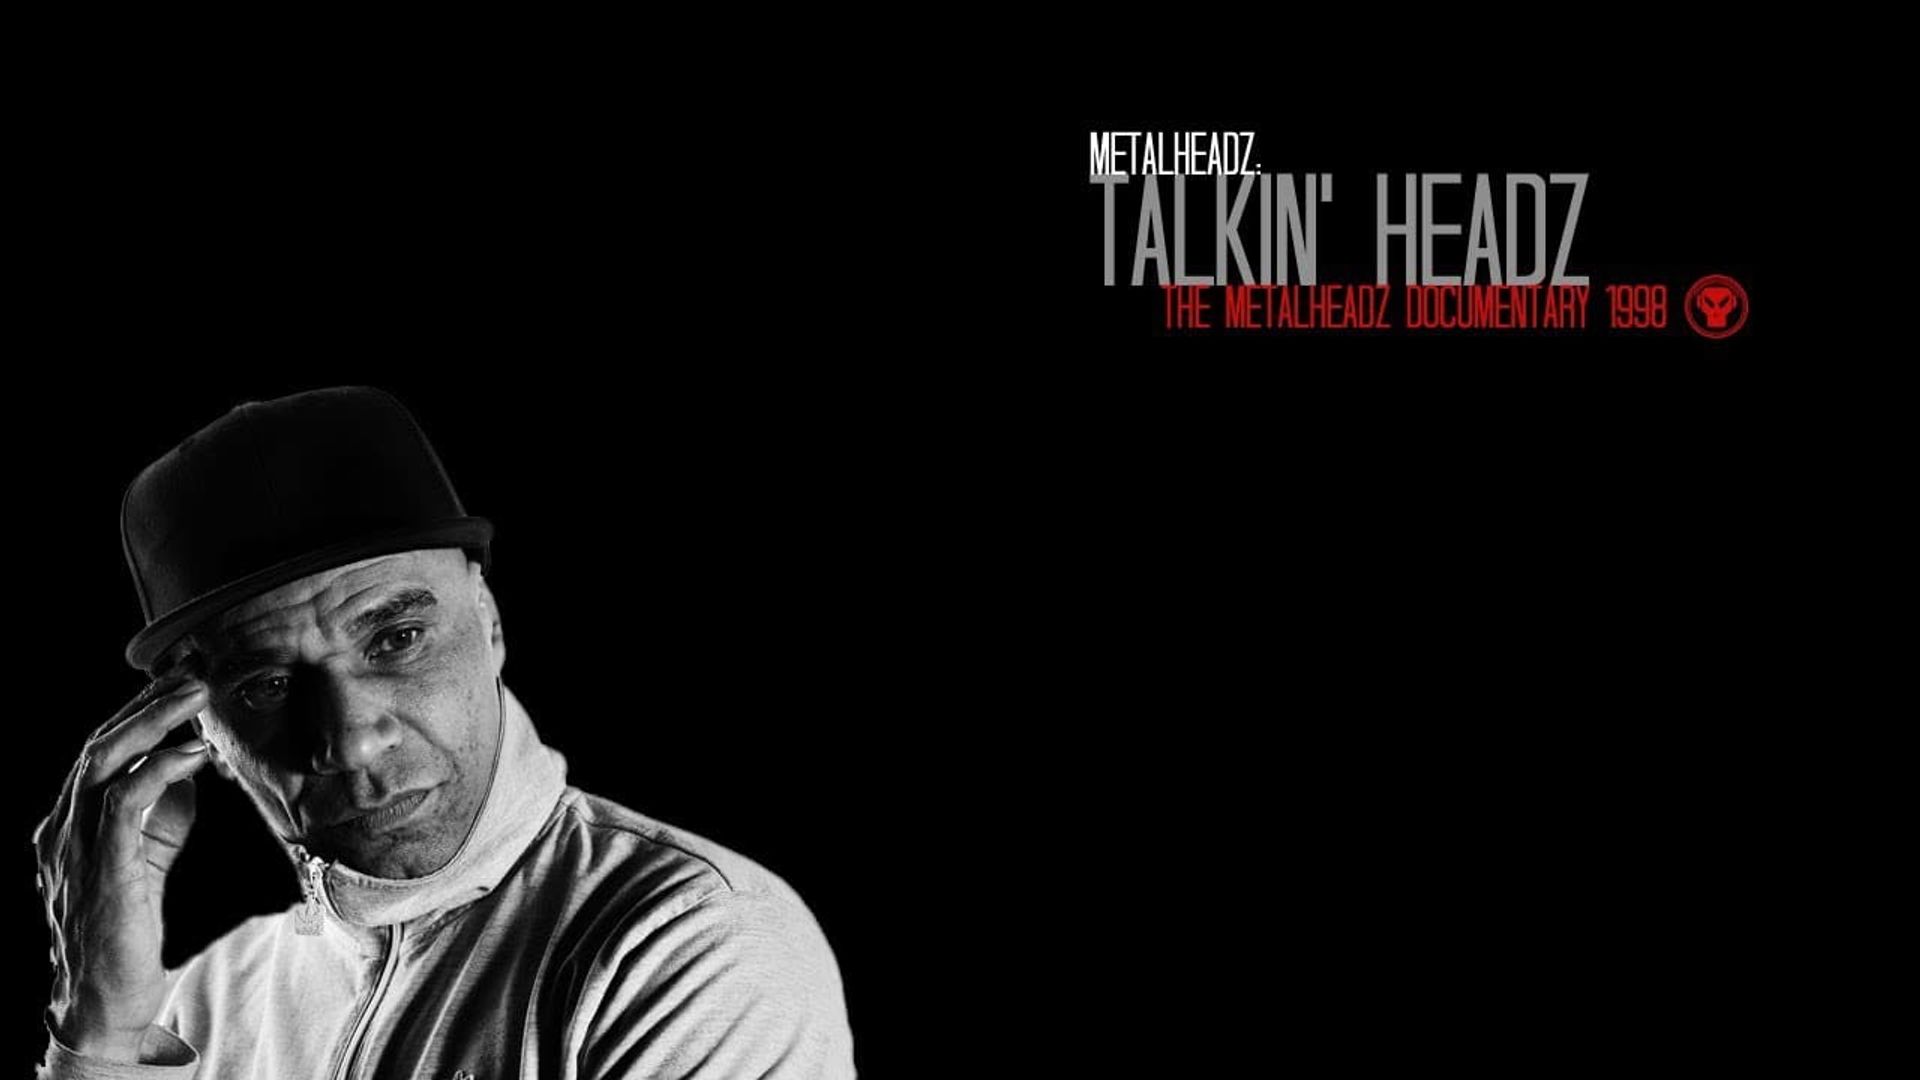 Talkin' Headz - The Metalheadz Documentary background